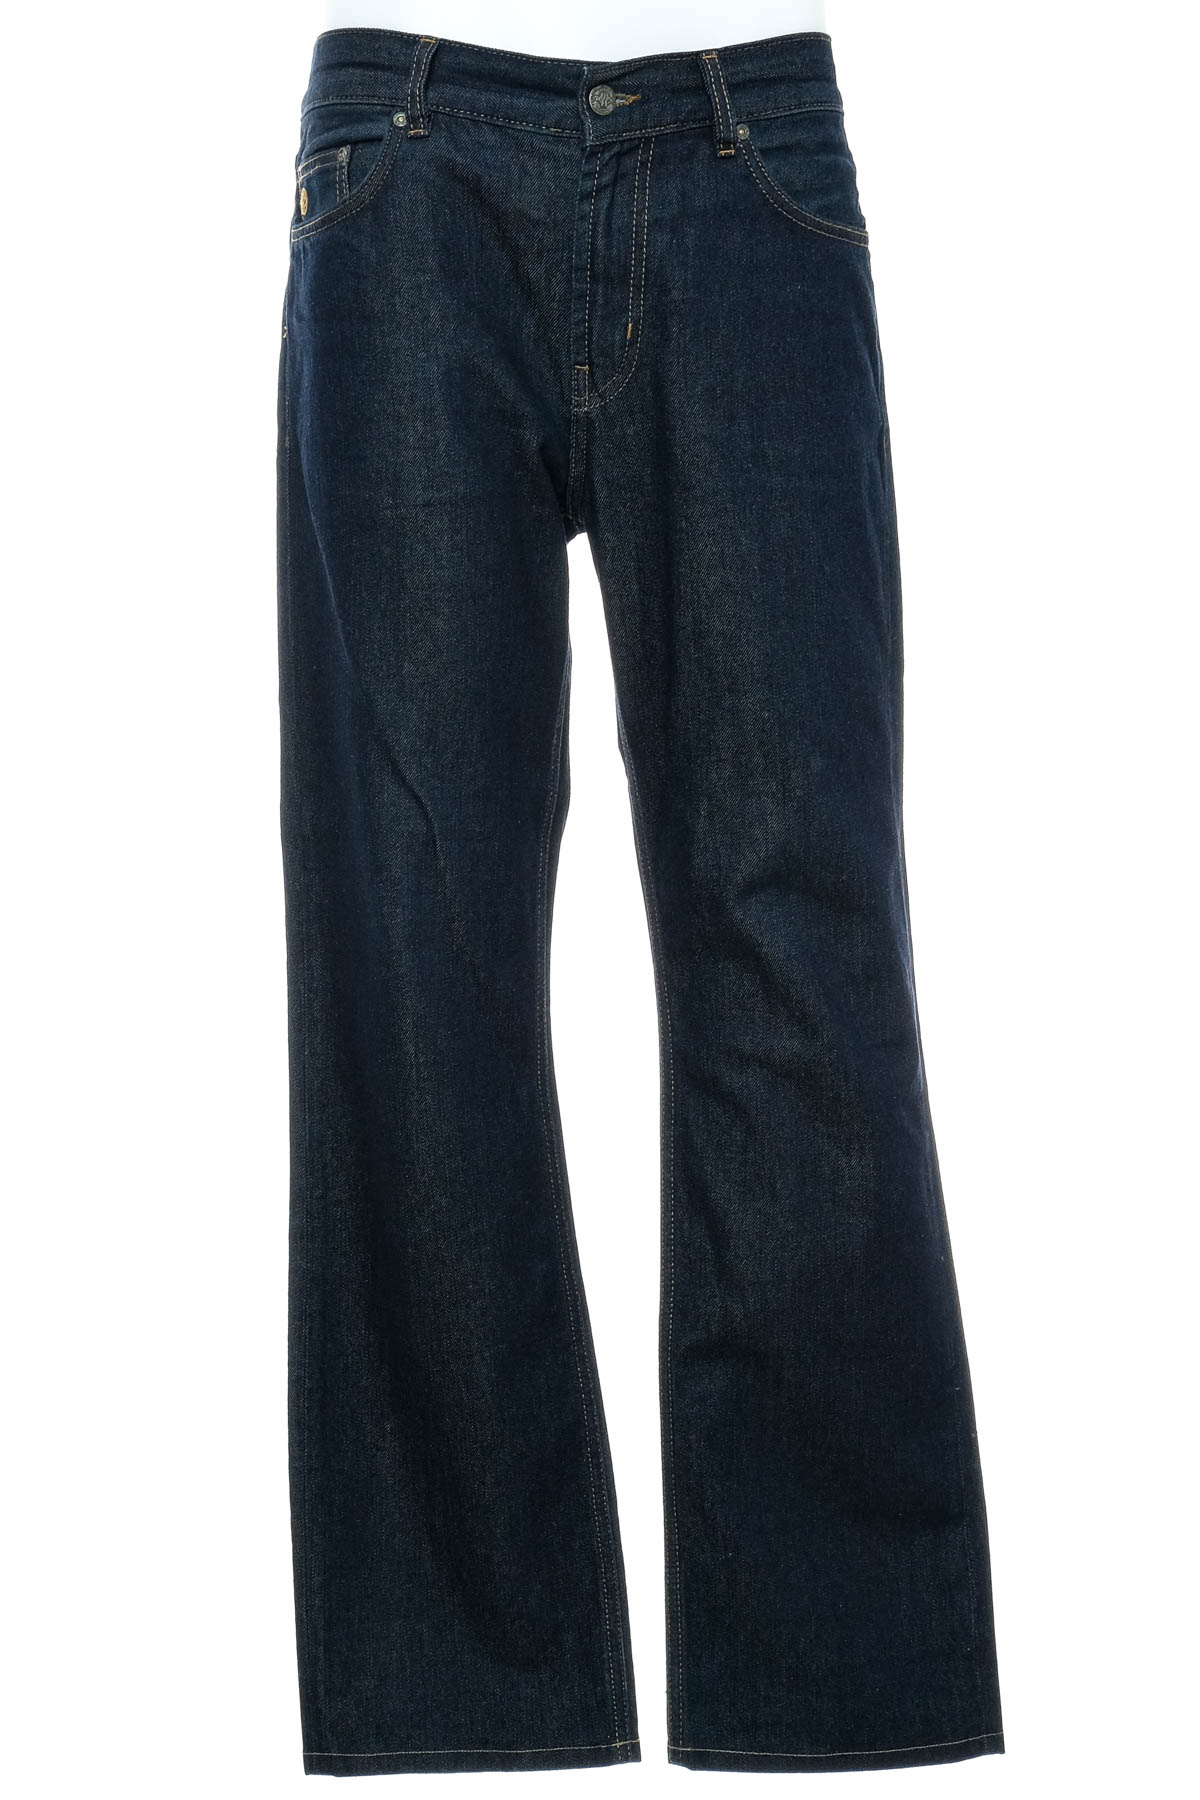 Jeans pentru bărbăți - MCNEAL - 0